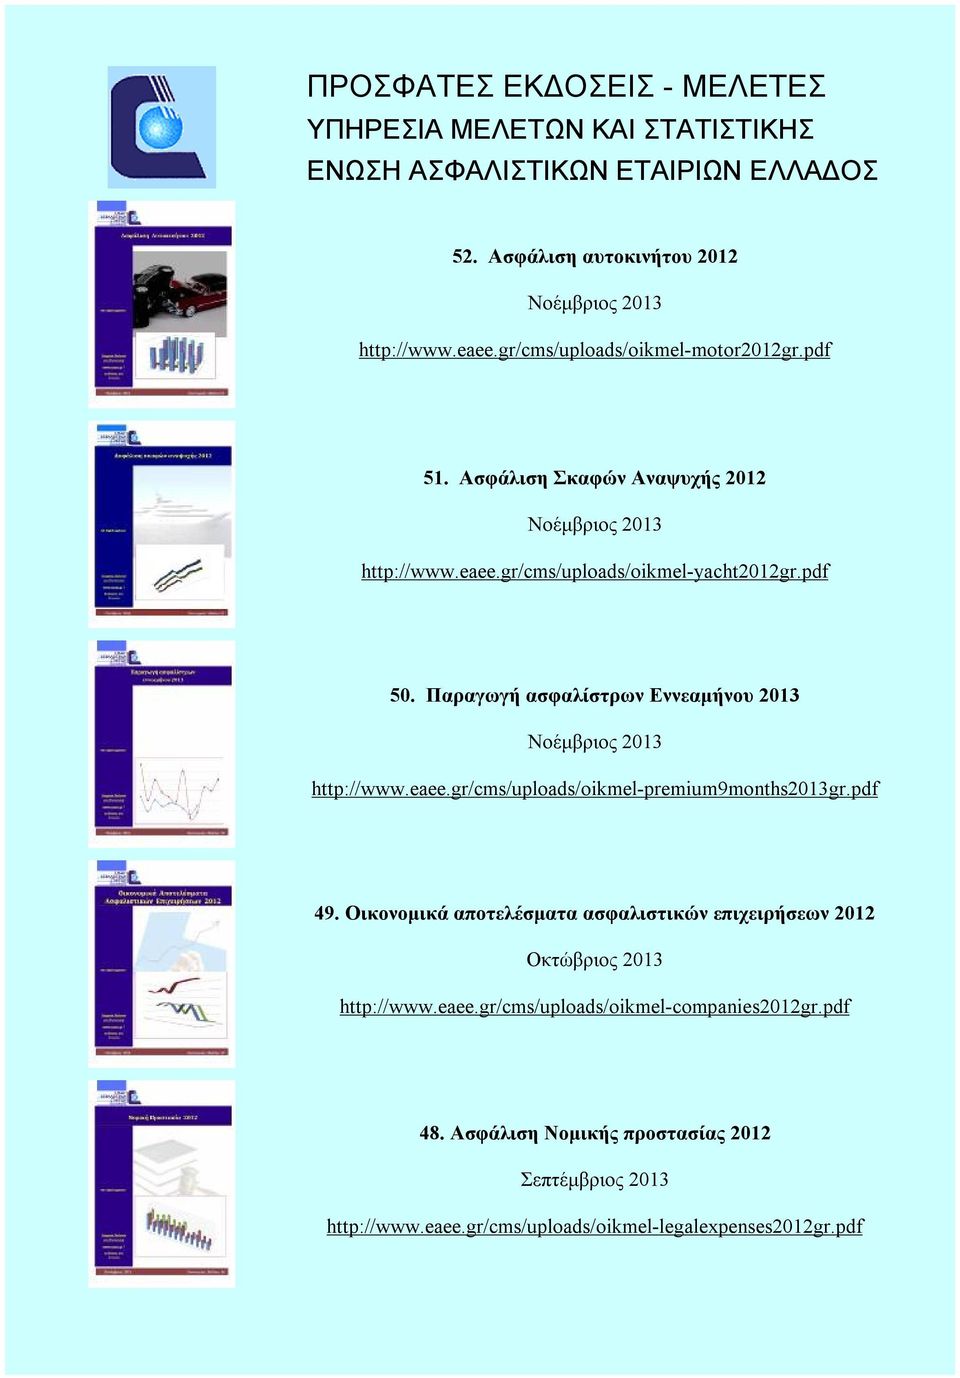 Παραγωγή ασφαλίστρων Εννεαμήνου 2013 Νοέμβριος 2013 http://www.eaee.gr/cms/uploads/oikmel-premium9months2013gr.pdf 49.